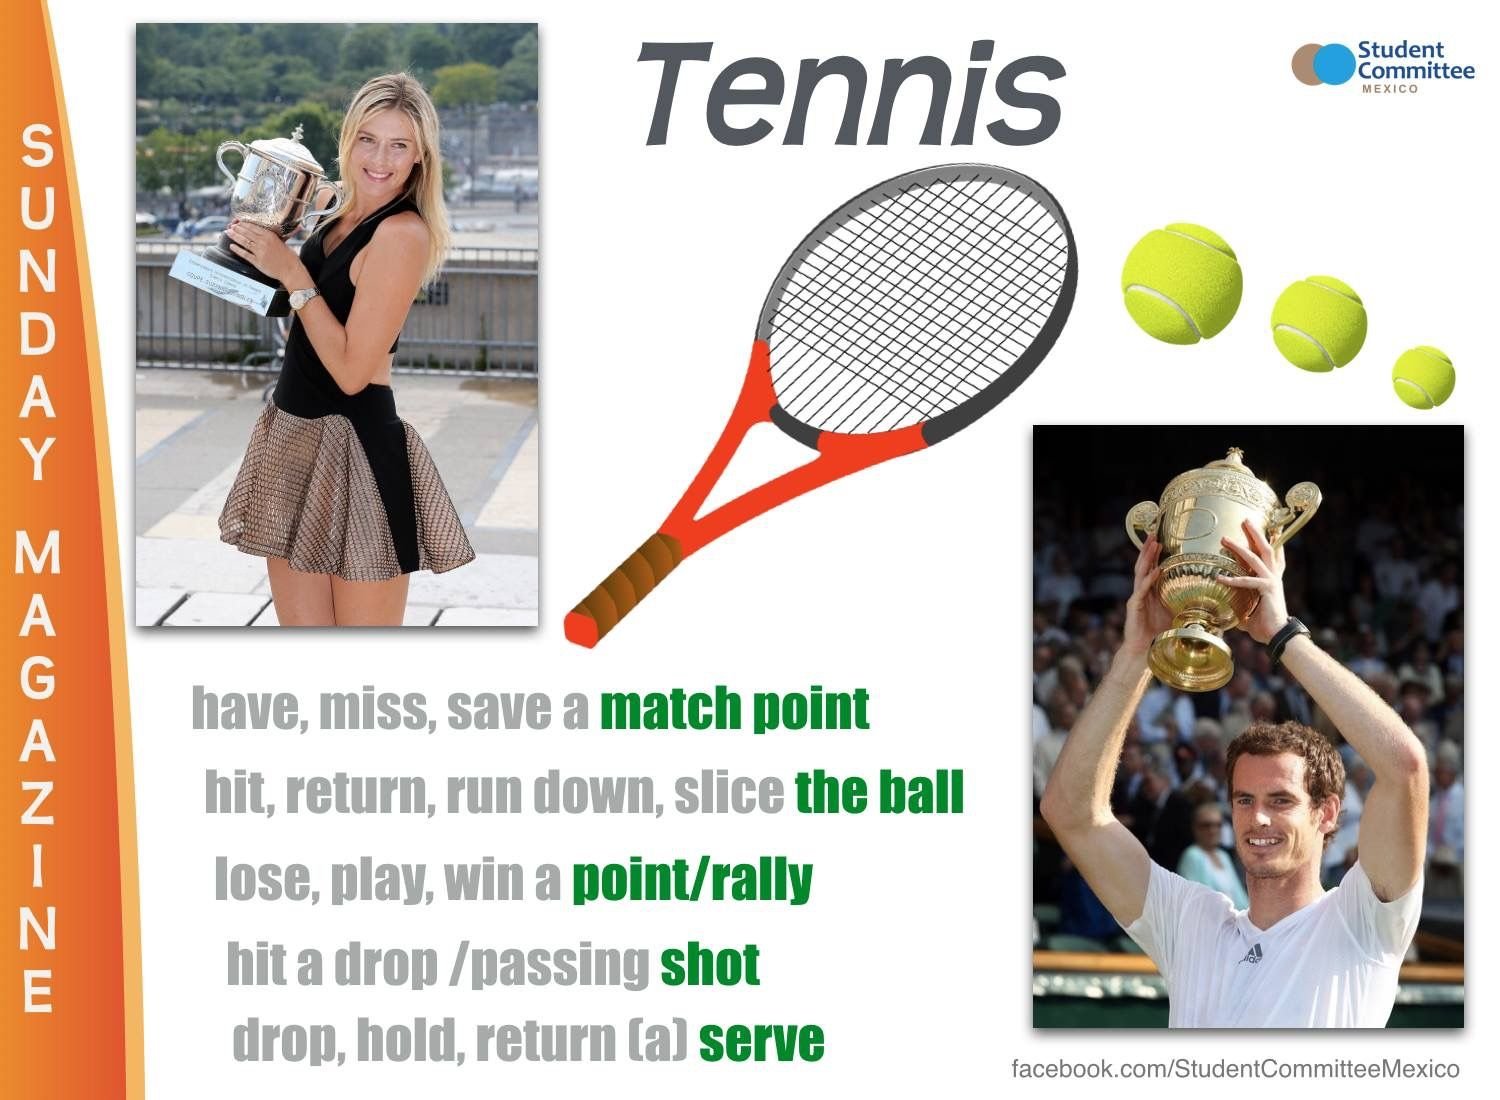 They like likes tennis. Теннис на английском. Презентация про теннис на английском. Большой теннис на английском. Проект по английскому языку на тему теннис.